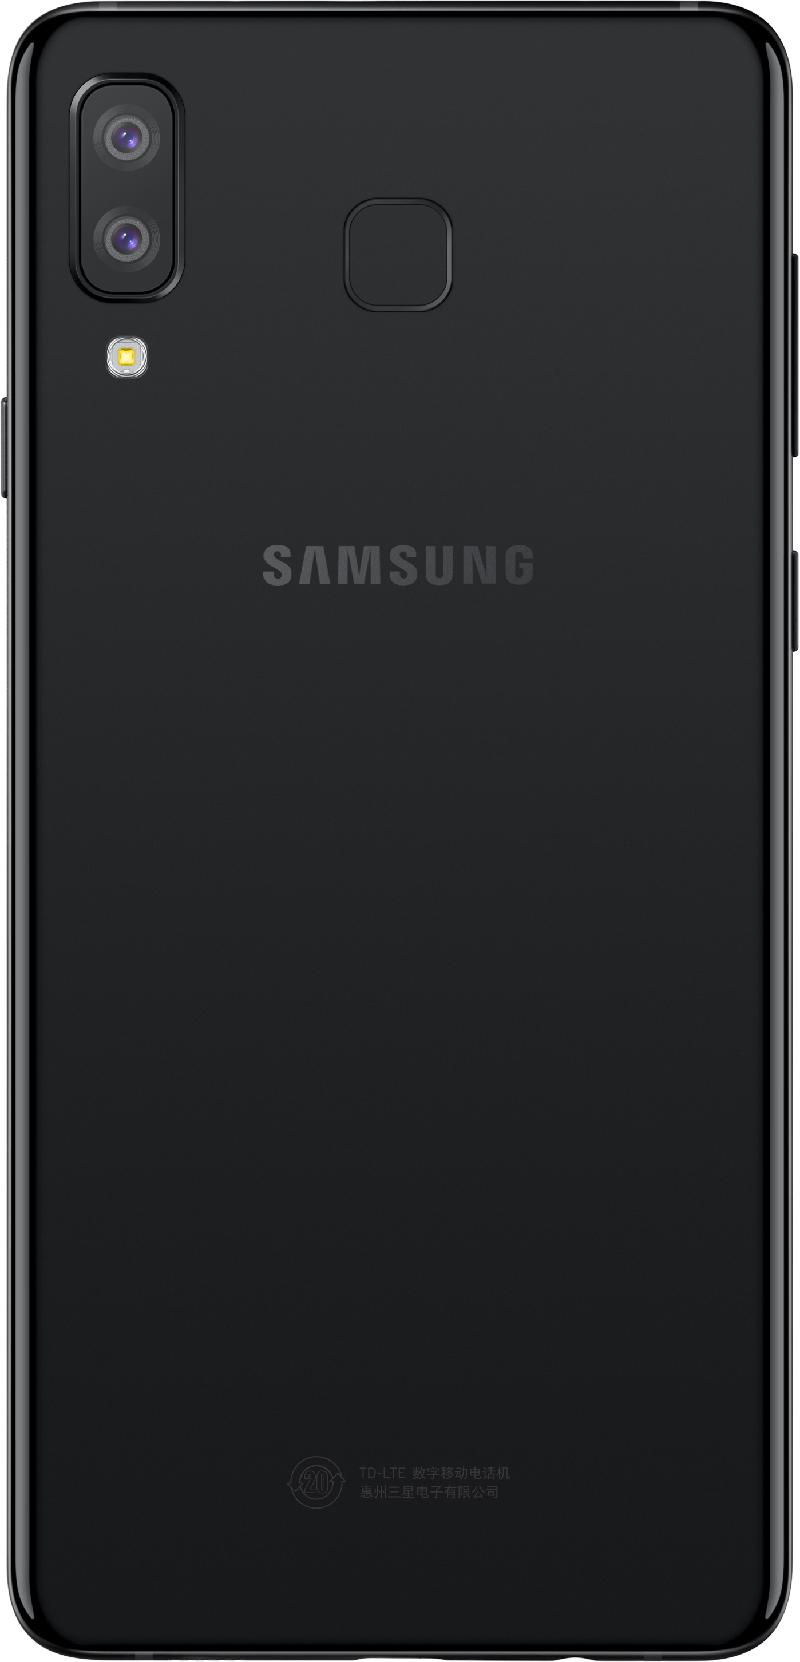 Galaxy-A8_Black_5.jpg